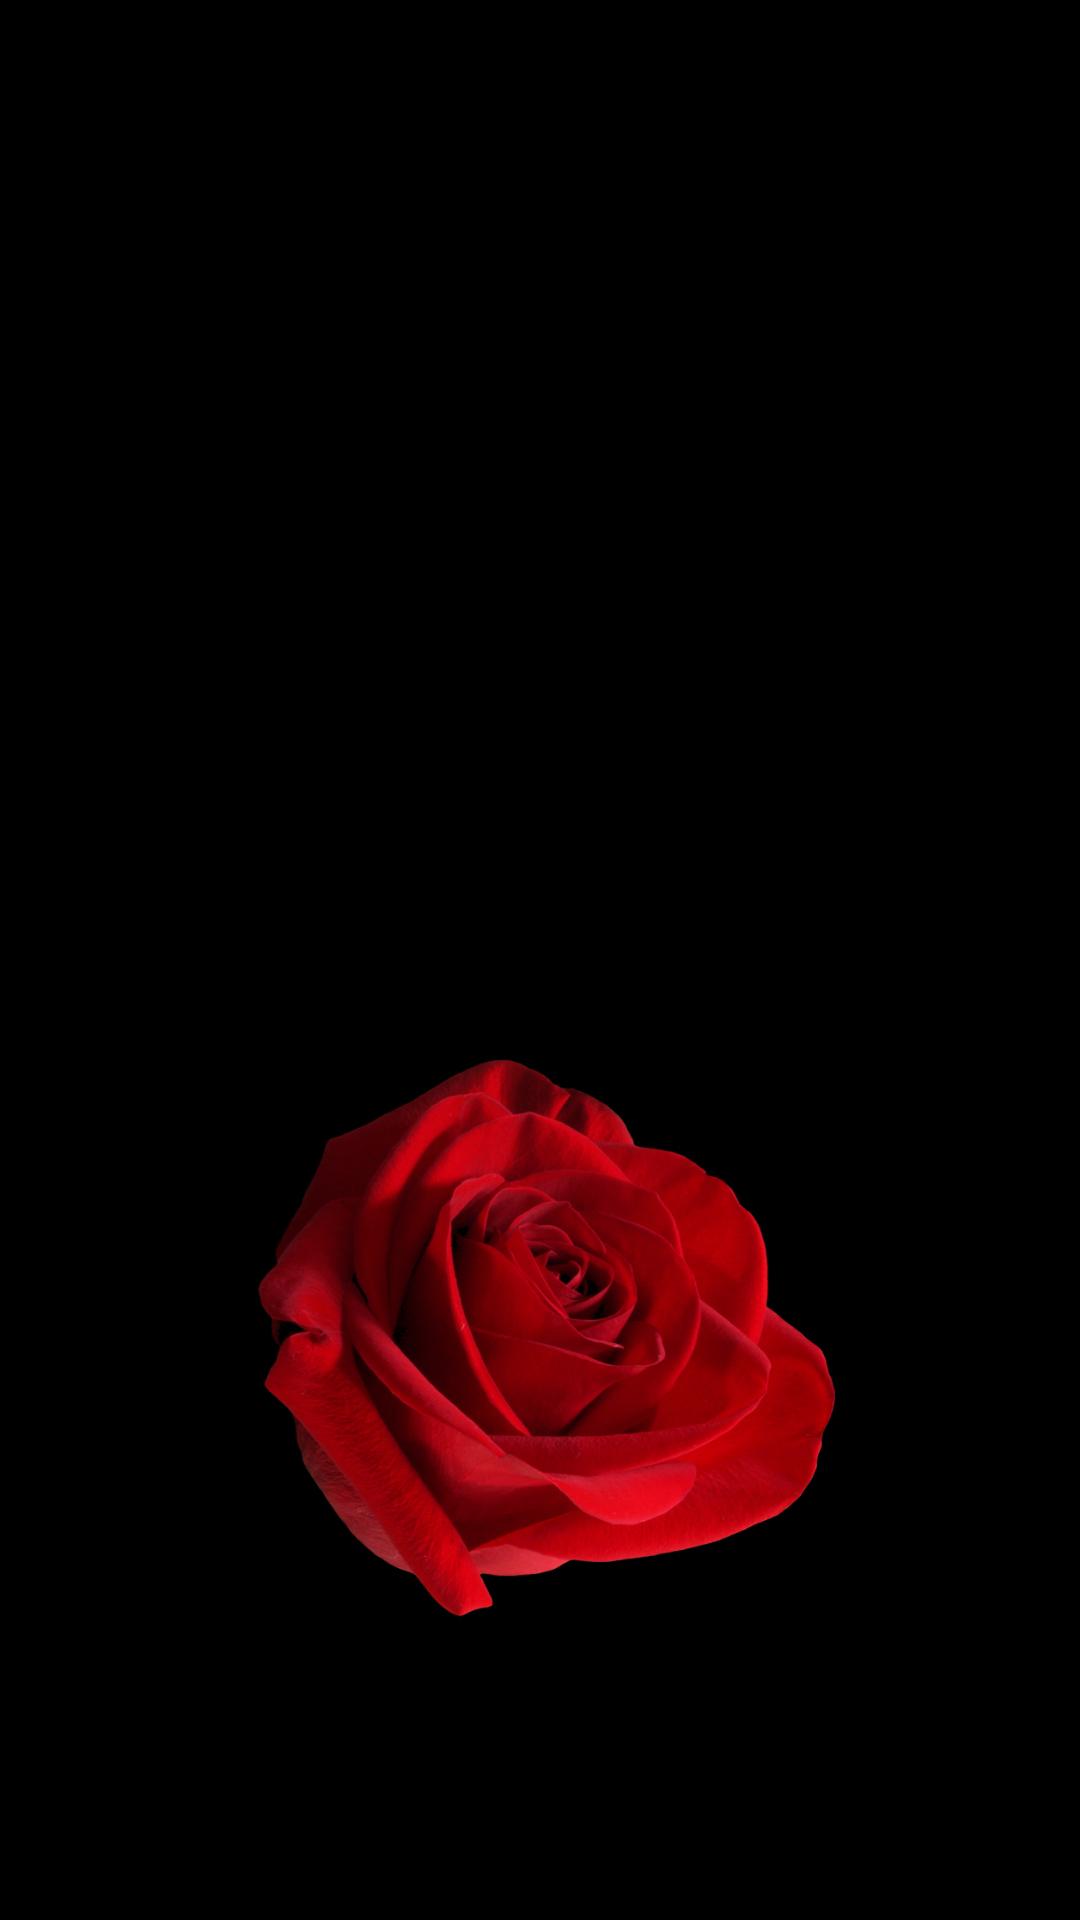 红玫瑰黑色背景1080x1920手机壁纸_手机壁纸图片高清